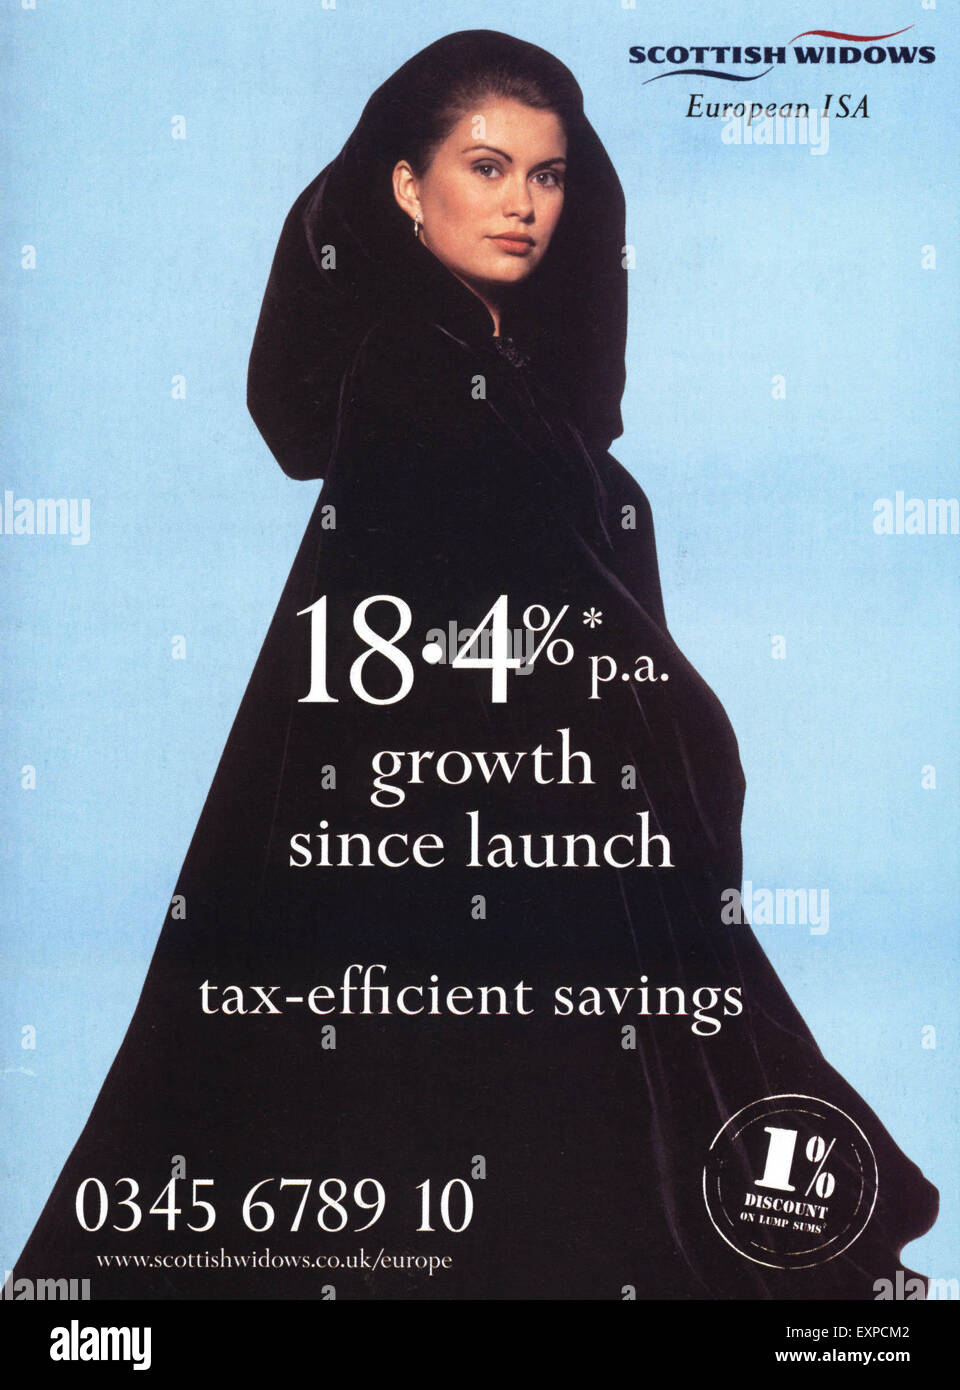 2000s UK Scottish Widows Magazine Advert Stock Photo